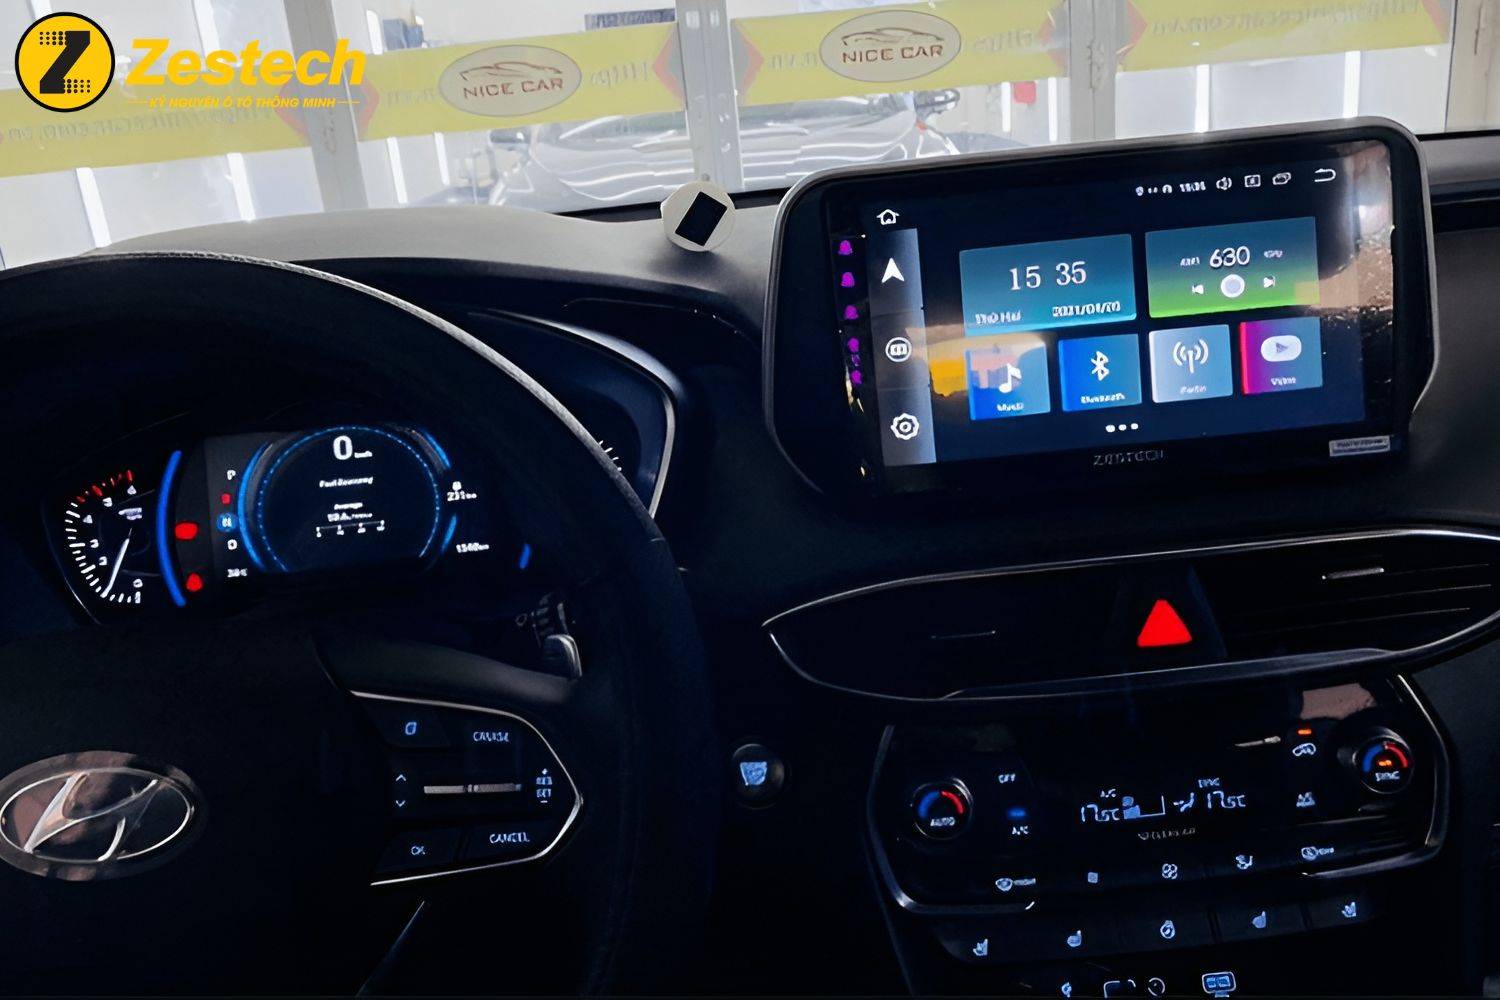 Giải trí đa phương tiện trên Màn hình Android cho xe Hyundai Santafe